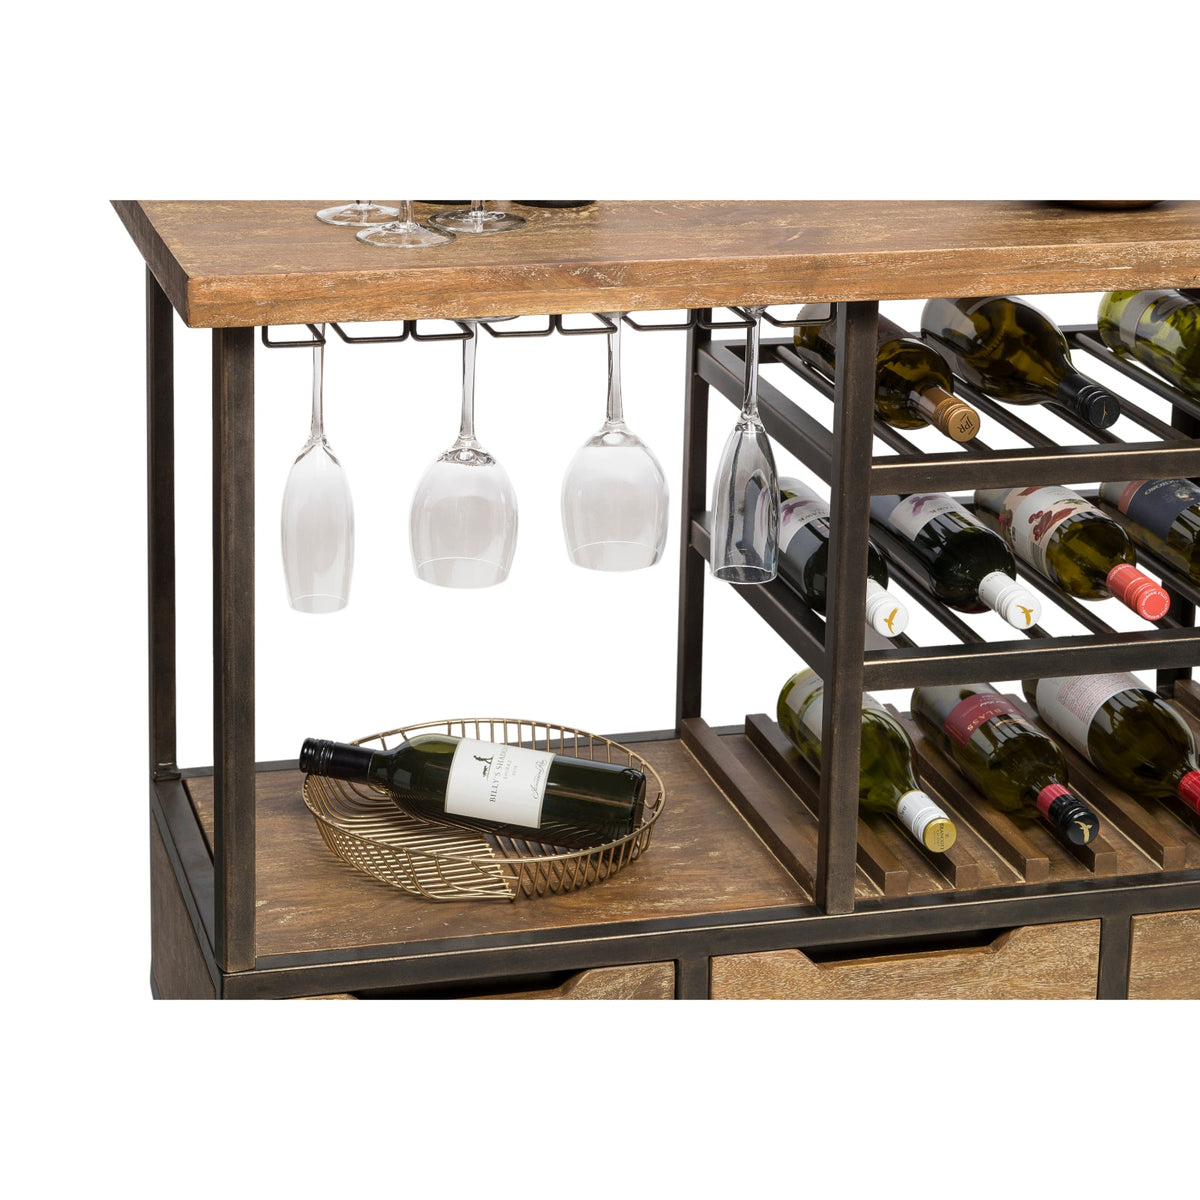 Wooden Bar Cart with Wine Storage - Wine Stash